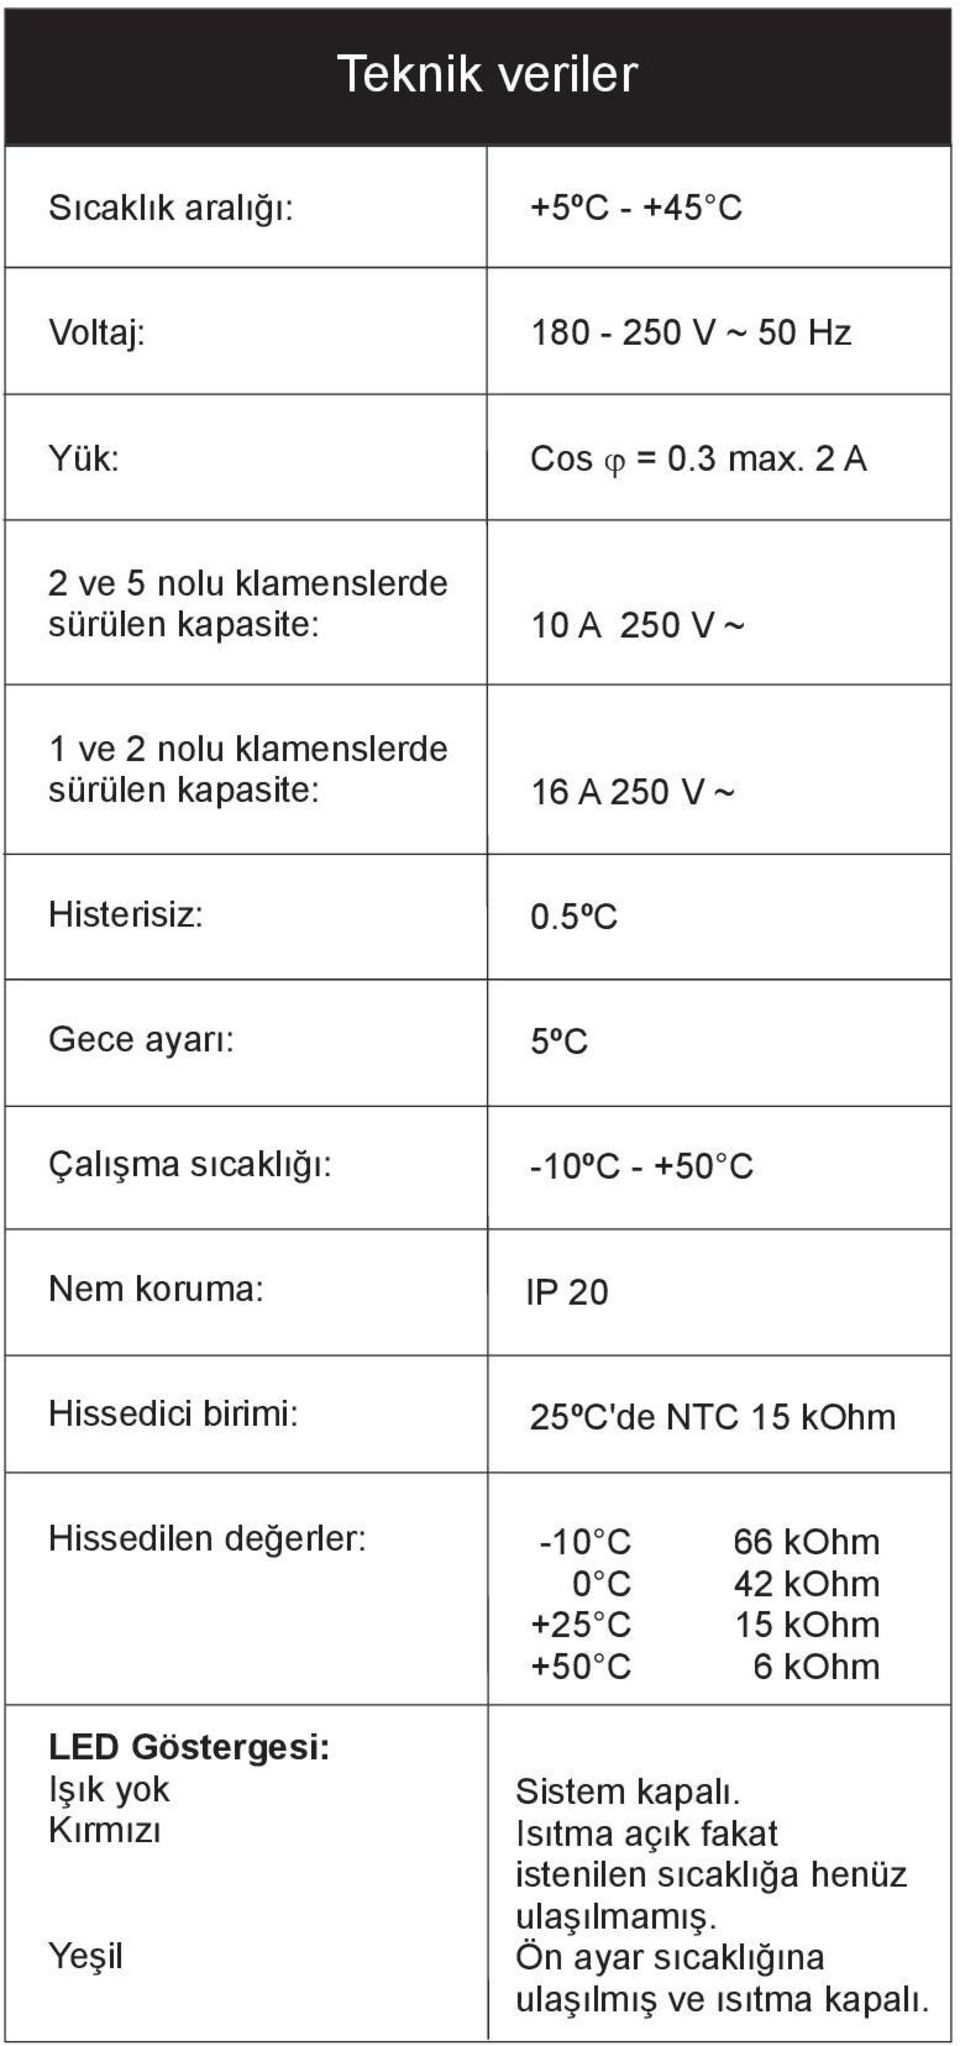 5ºC Gece ayarı: 5ºC Çalışma sıcaklığı: -10ºC - +50 C Nem koruma: IP 20 Hissedici birimi: 25ºC'de NTC 15 kohm Hissedilen değerler: LED